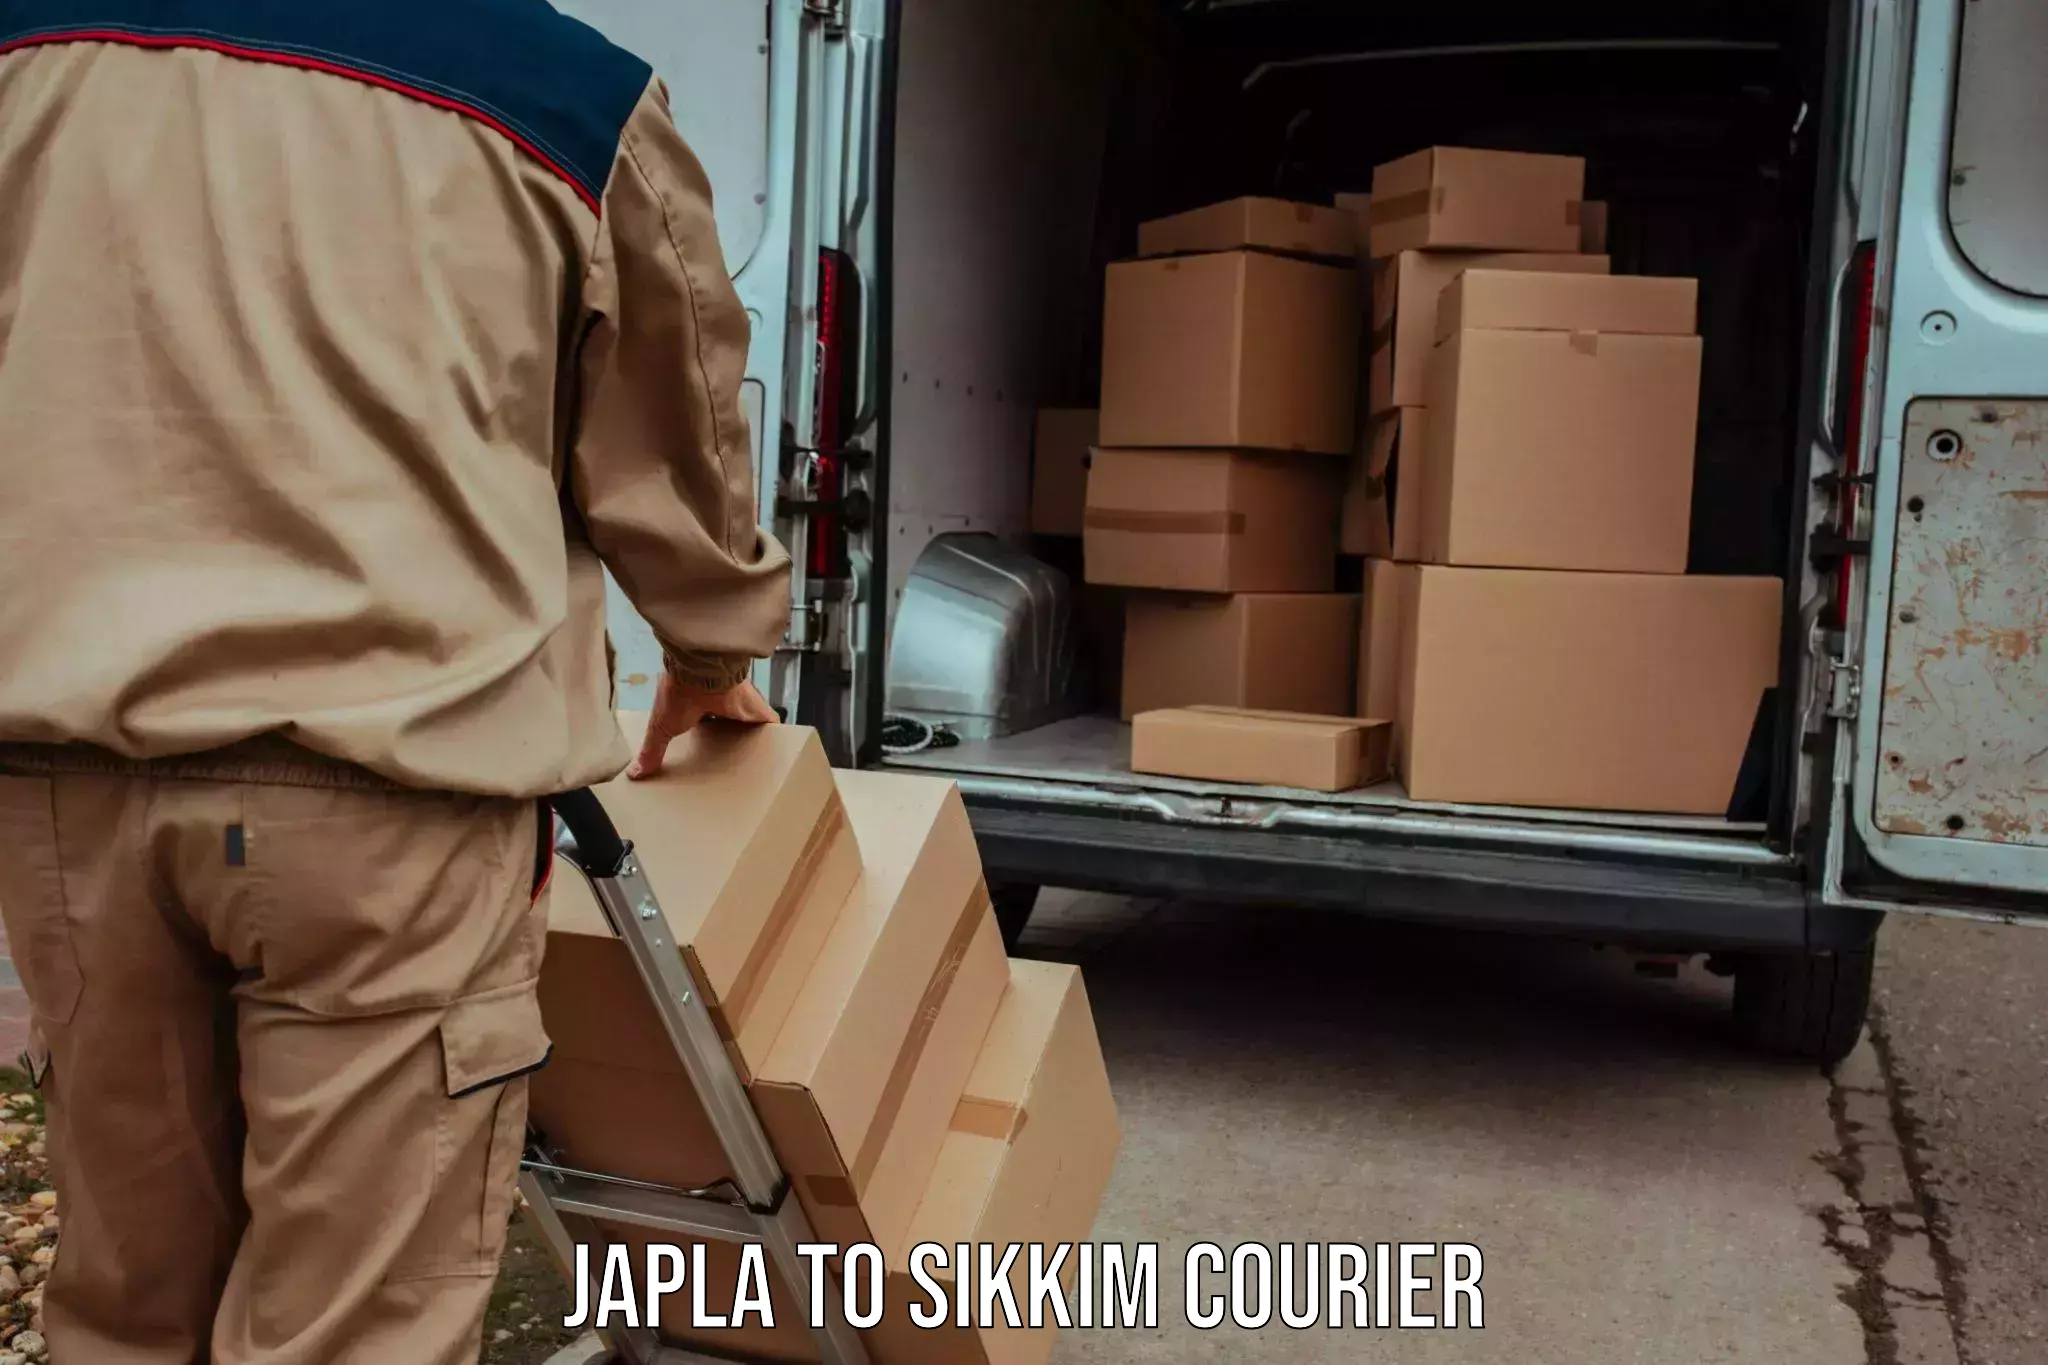 Doorstep delivery service Japla to North Sikkim